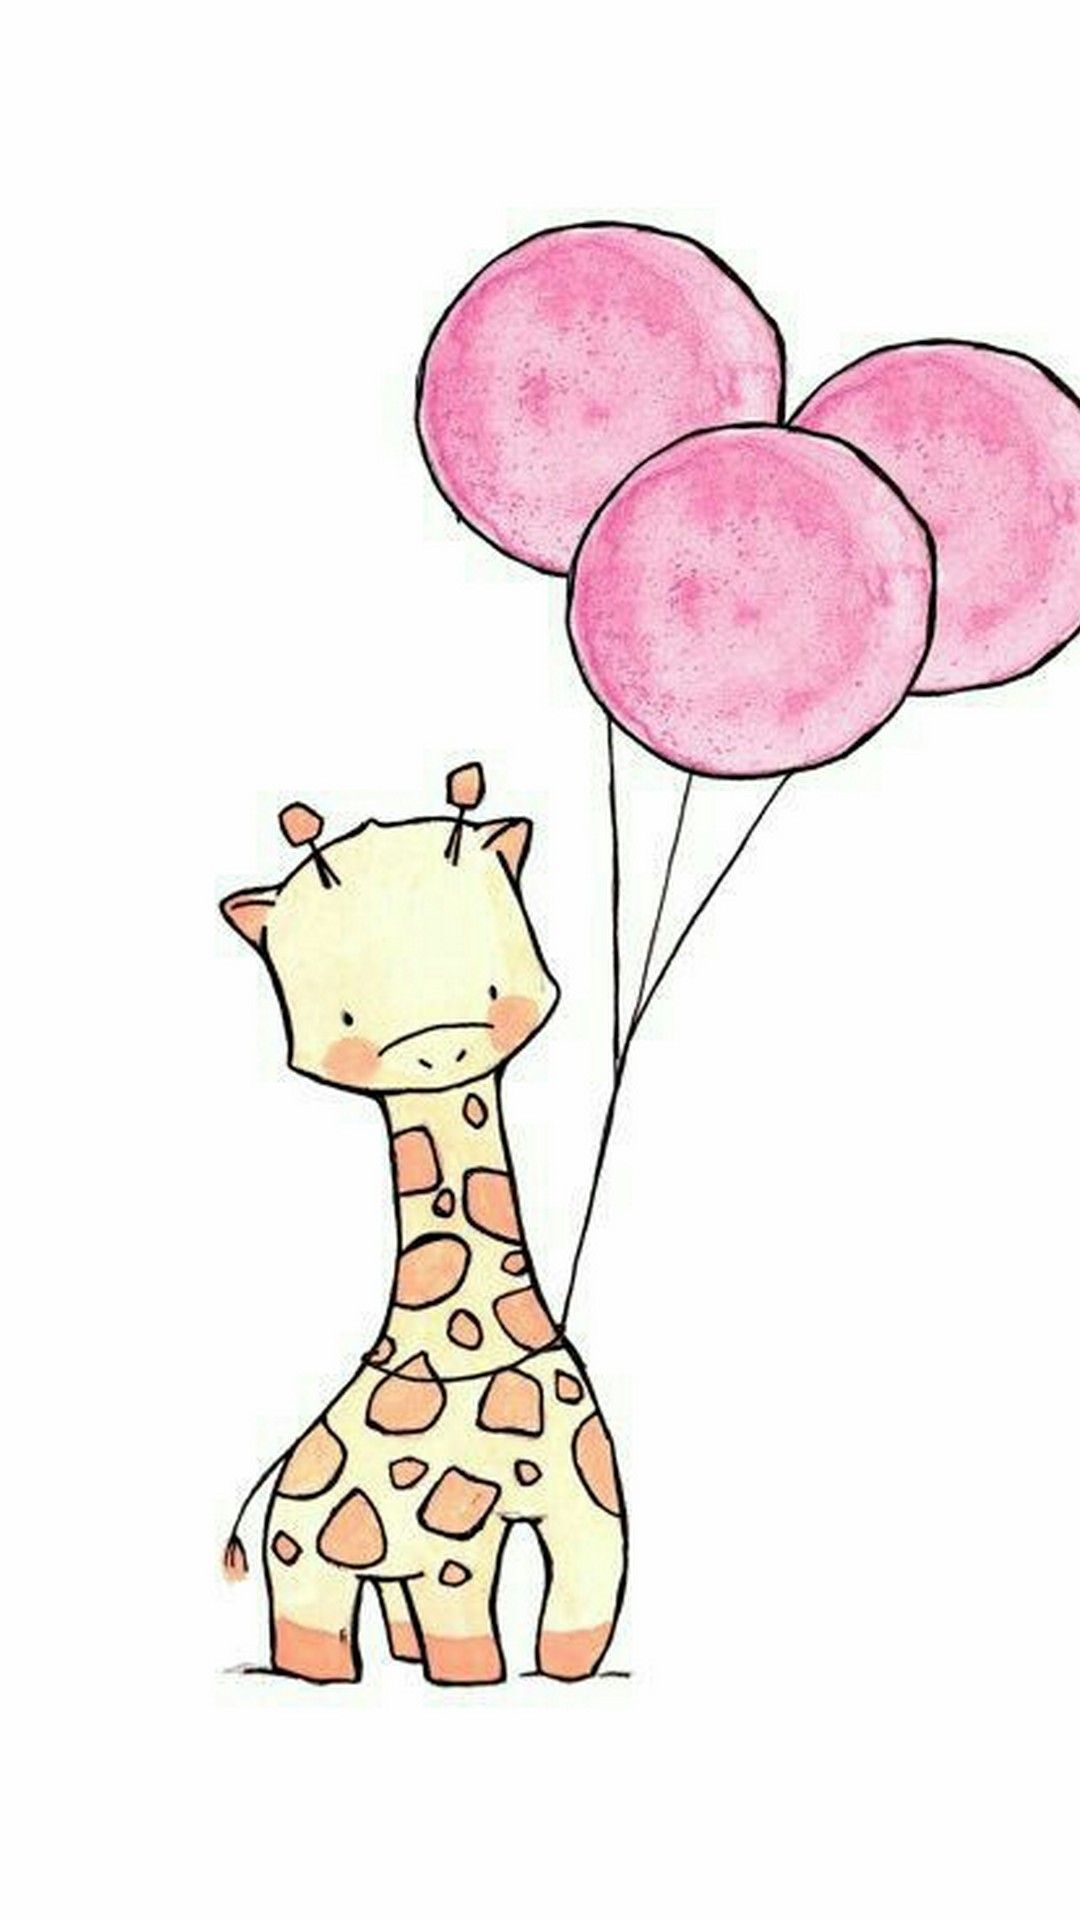 Giraffe Wallpaper Cartoon iPhone iPhone Wallpaper. Cute drawings, Giraffe drawing, Baby art